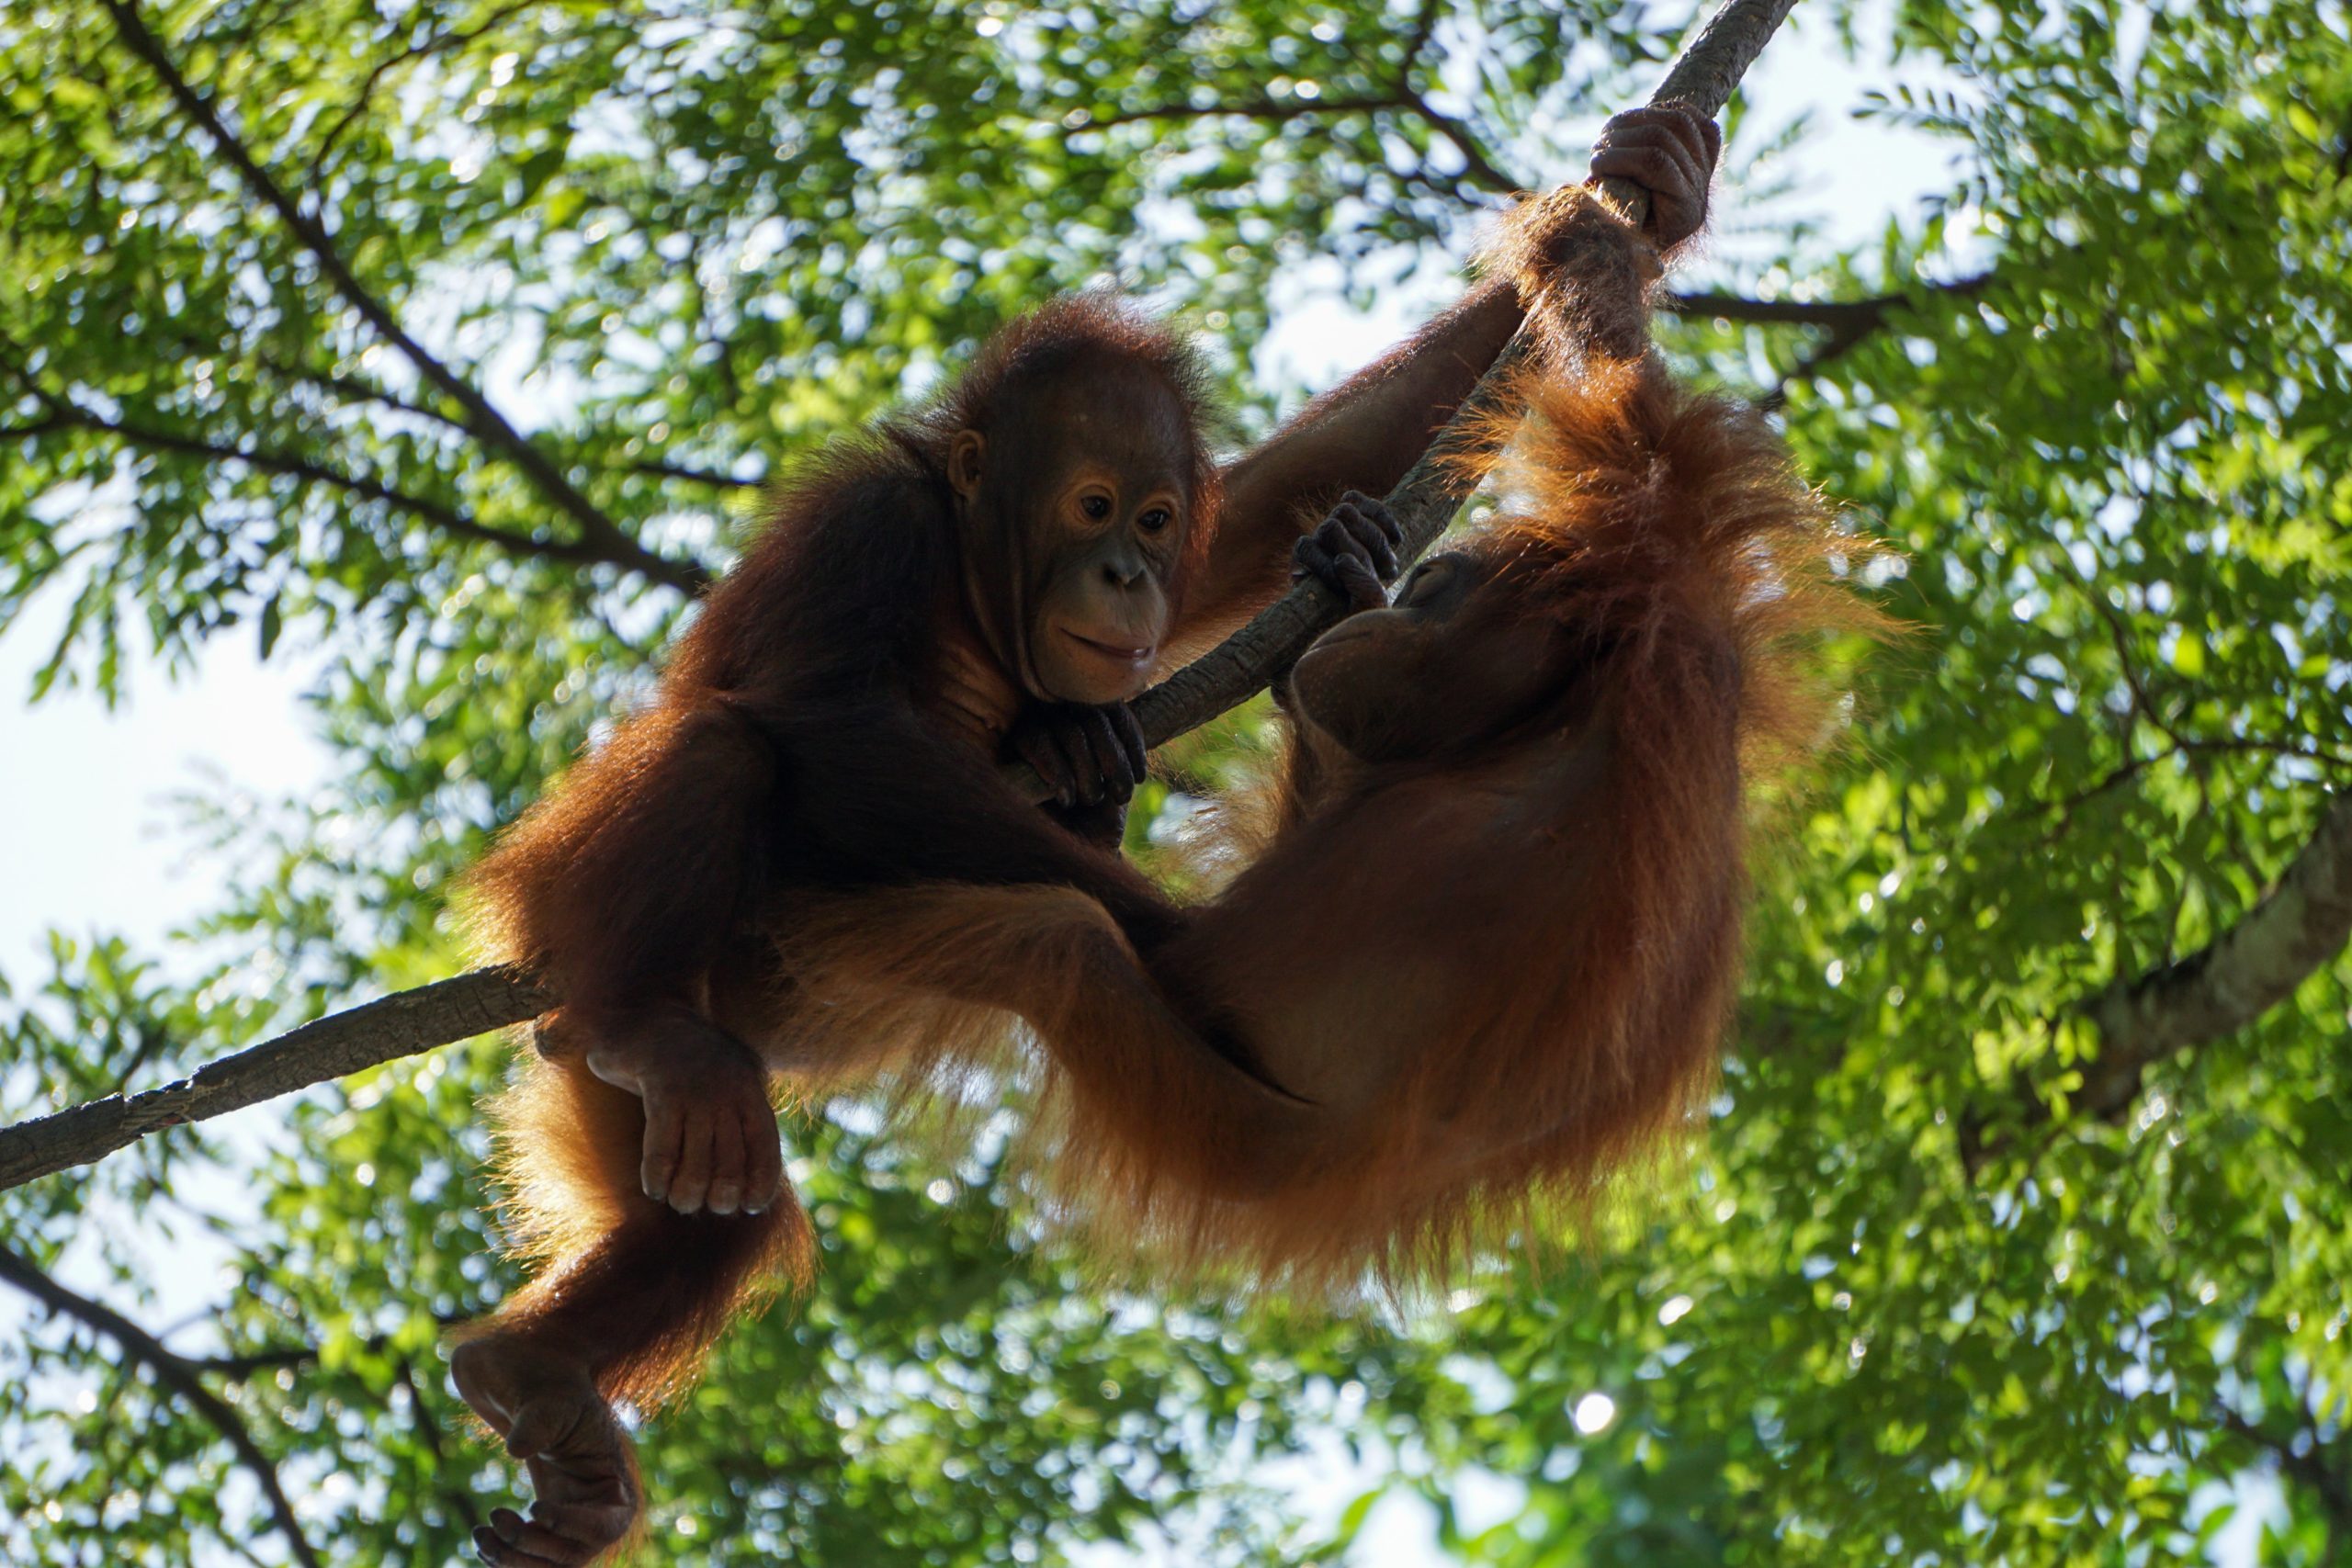 When to go to Borneo Orangutan spotting